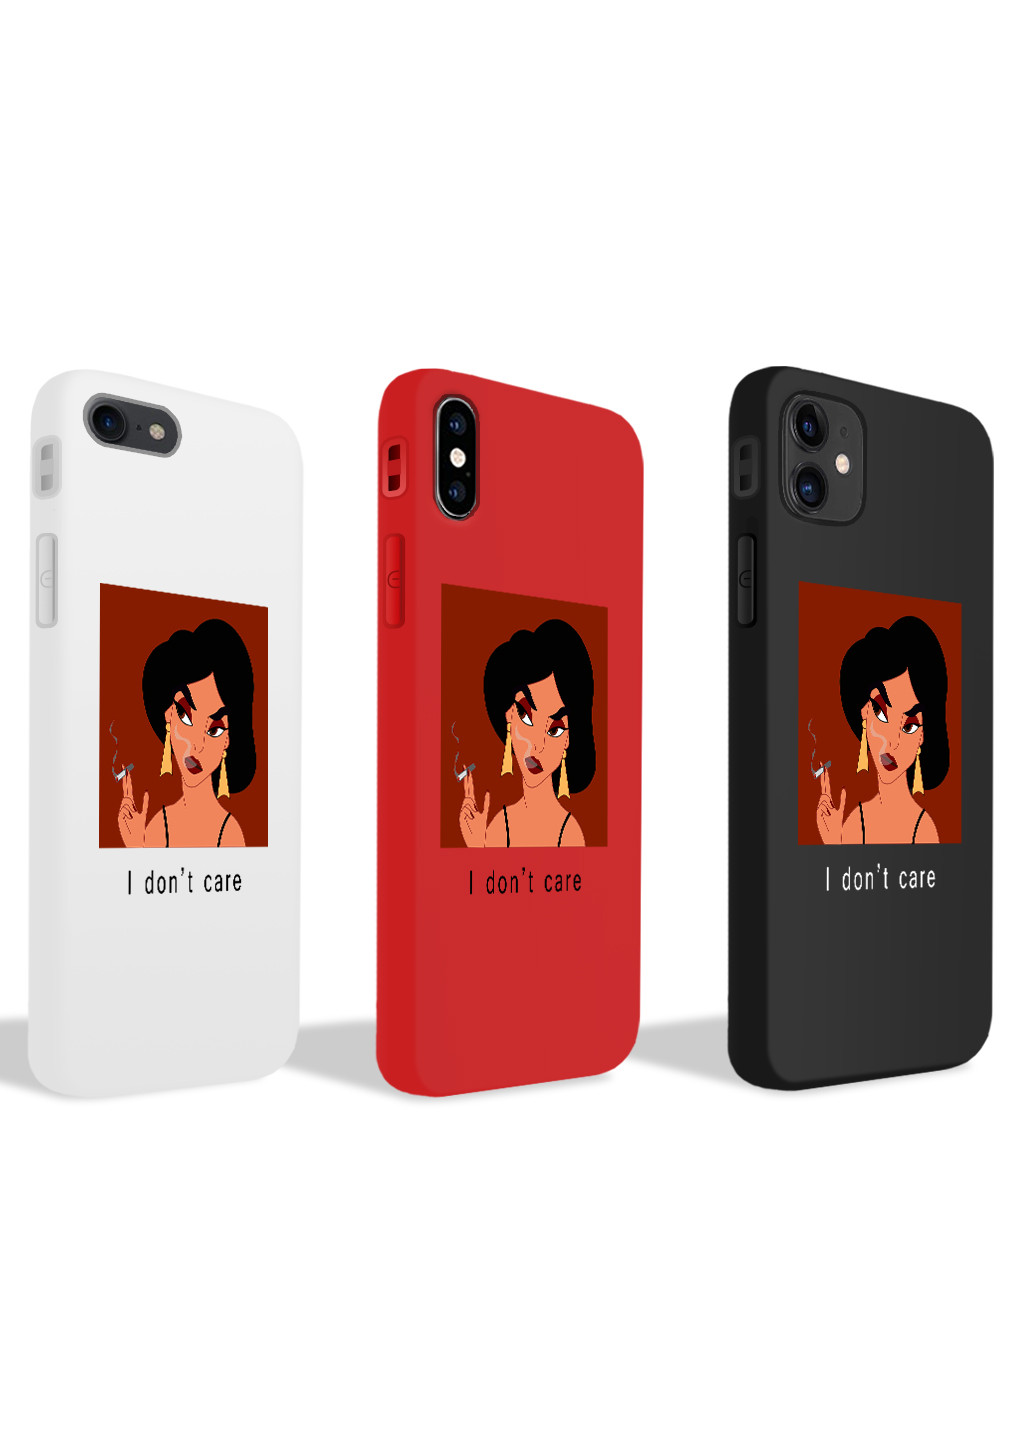 Чехол силиконовый Apple Iphone 7 Жасмин Аладдин Дисней (Princess Jasmine Disney) (17361-1430) MobiPrint (219778329)